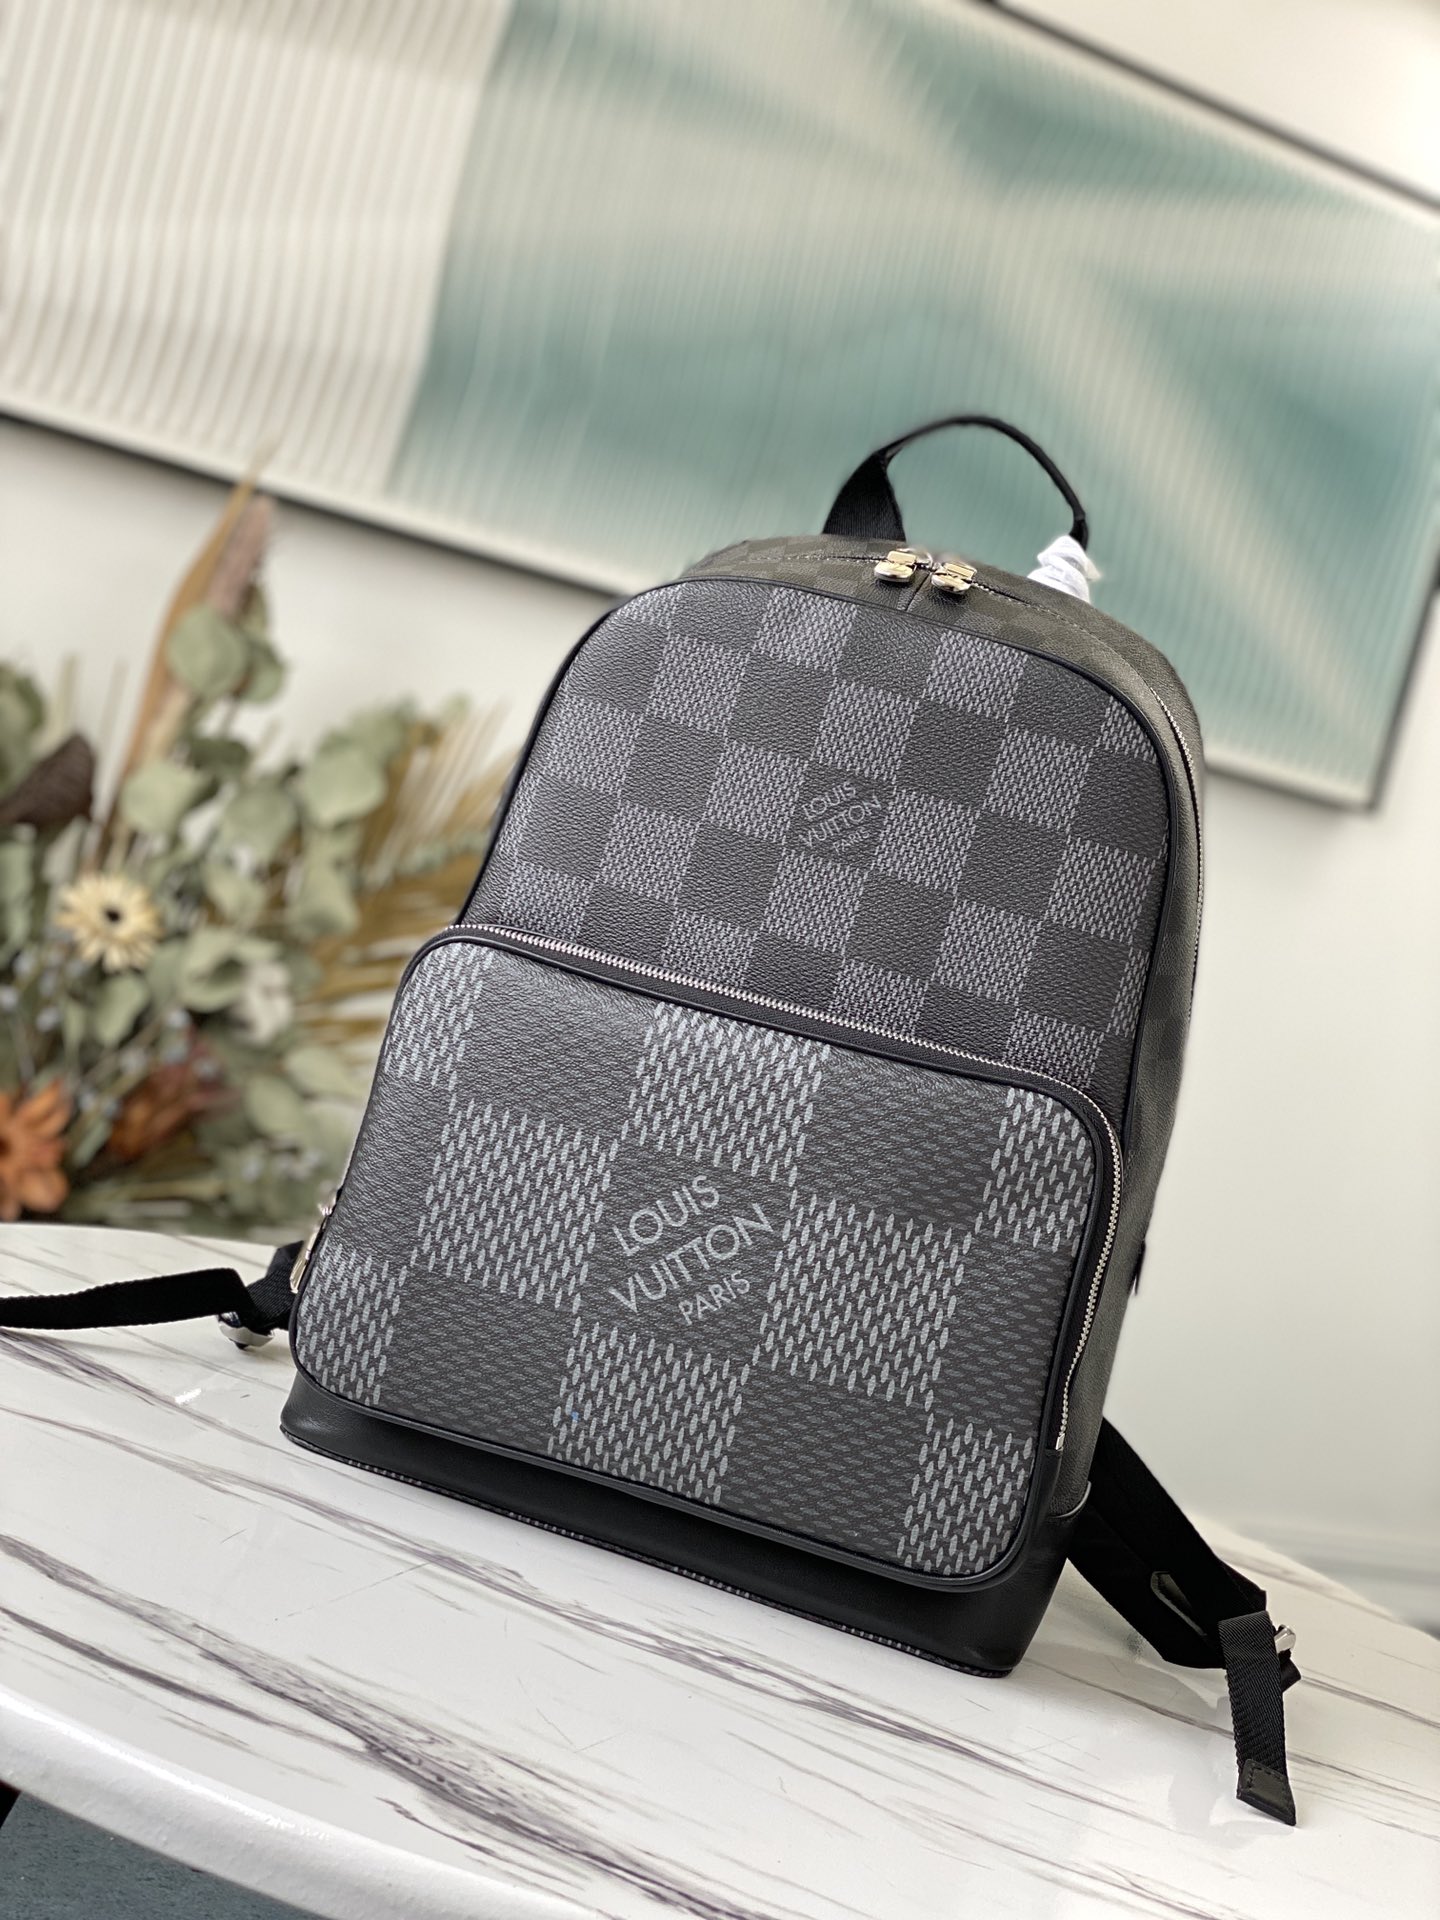 Louis Vuitton Damier Graphite Canvas Campus Backpack